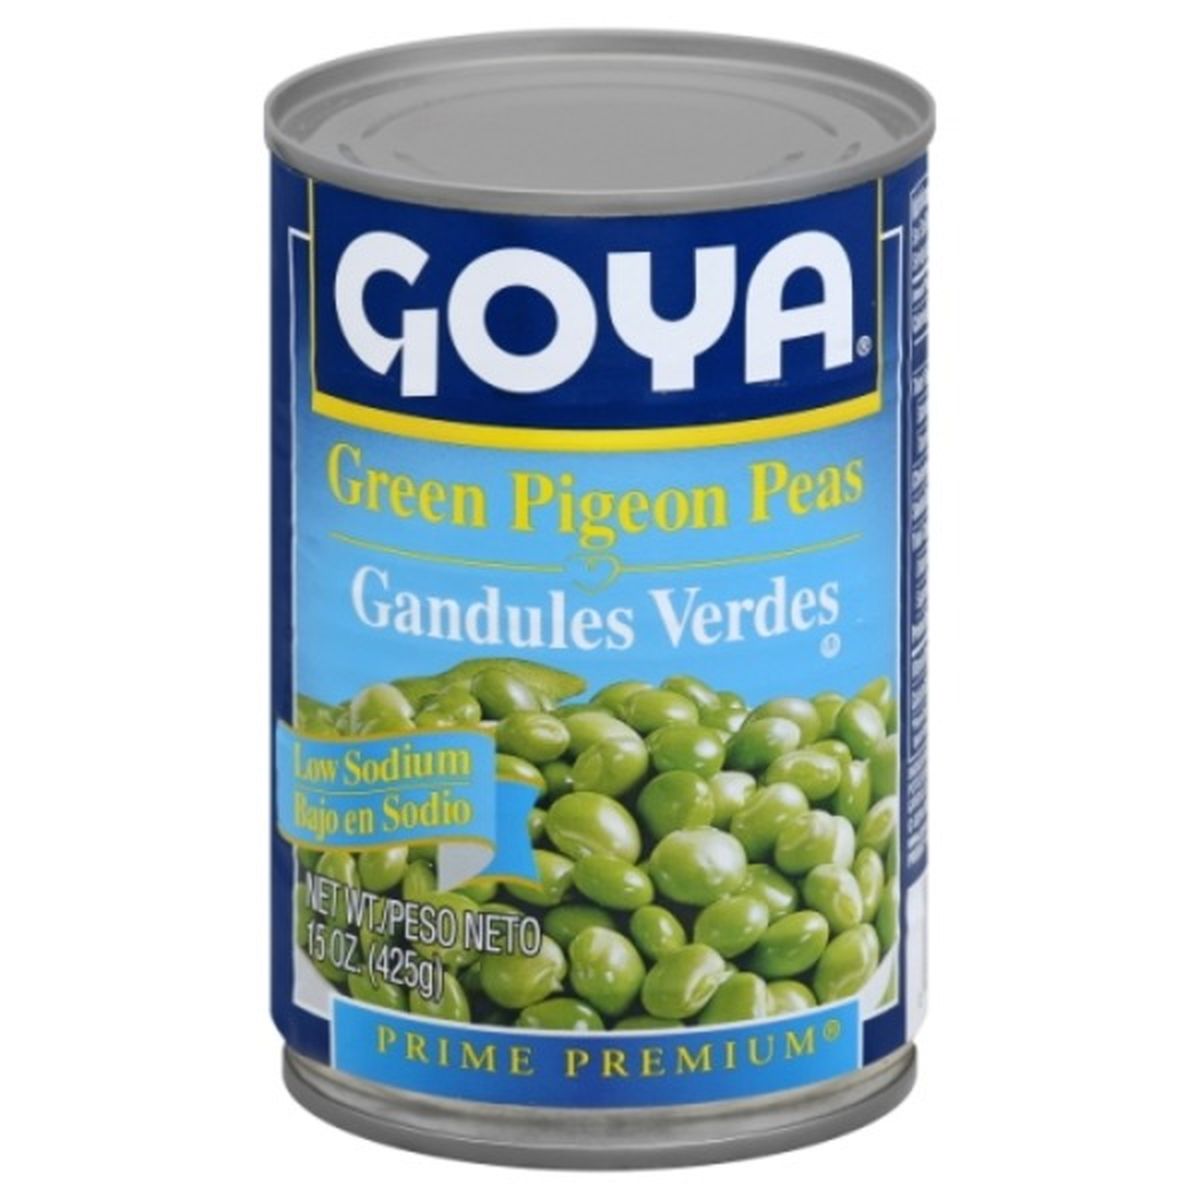 Calories in Goya Prime Premium Pigeon Peas, Low Sodium, Green